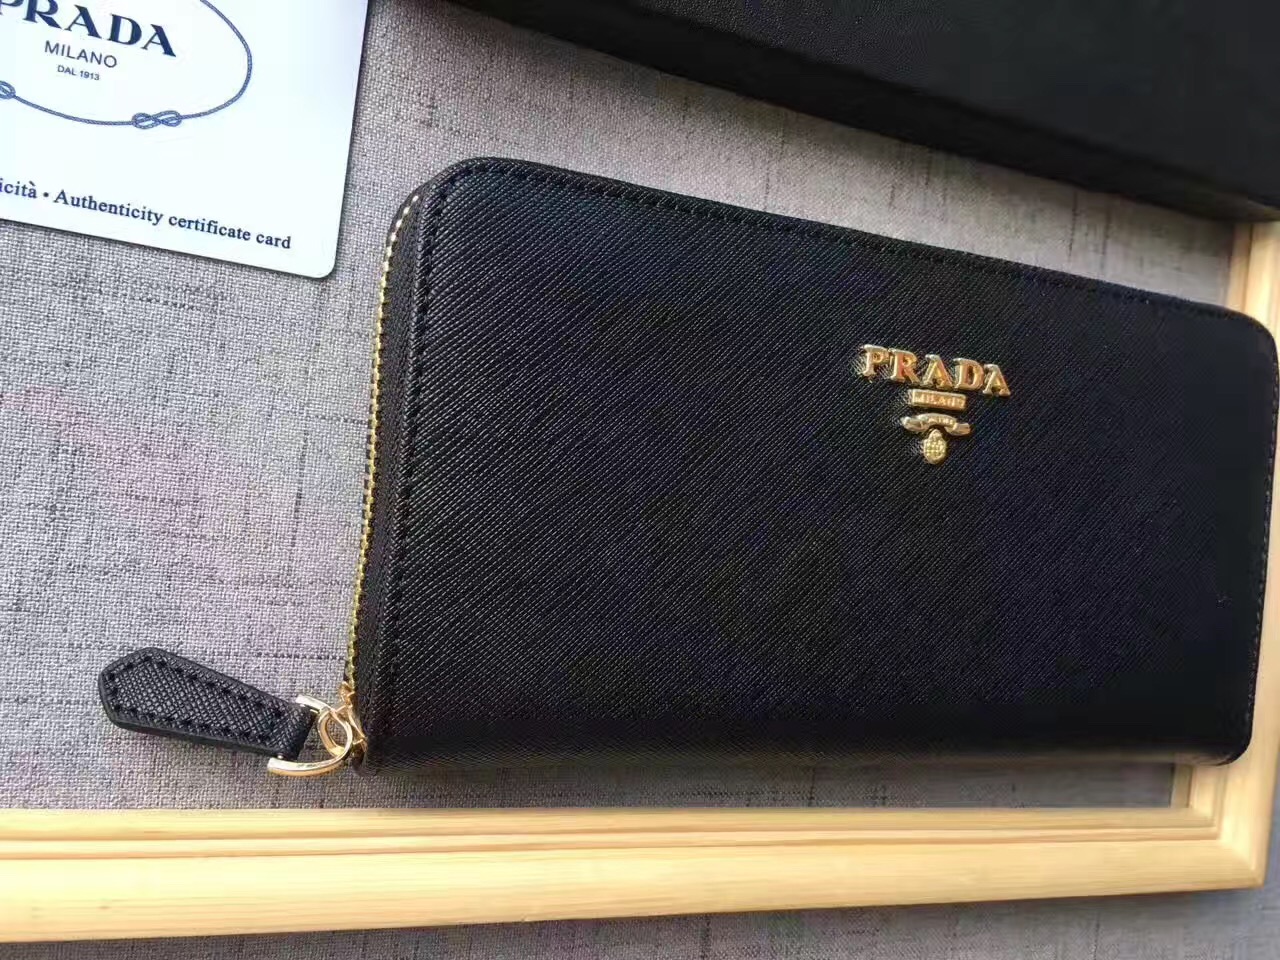 PRADA纯色女士手提包 PRADA包包官网新款 广州PRADA时尚包包 - 七七奢侈品